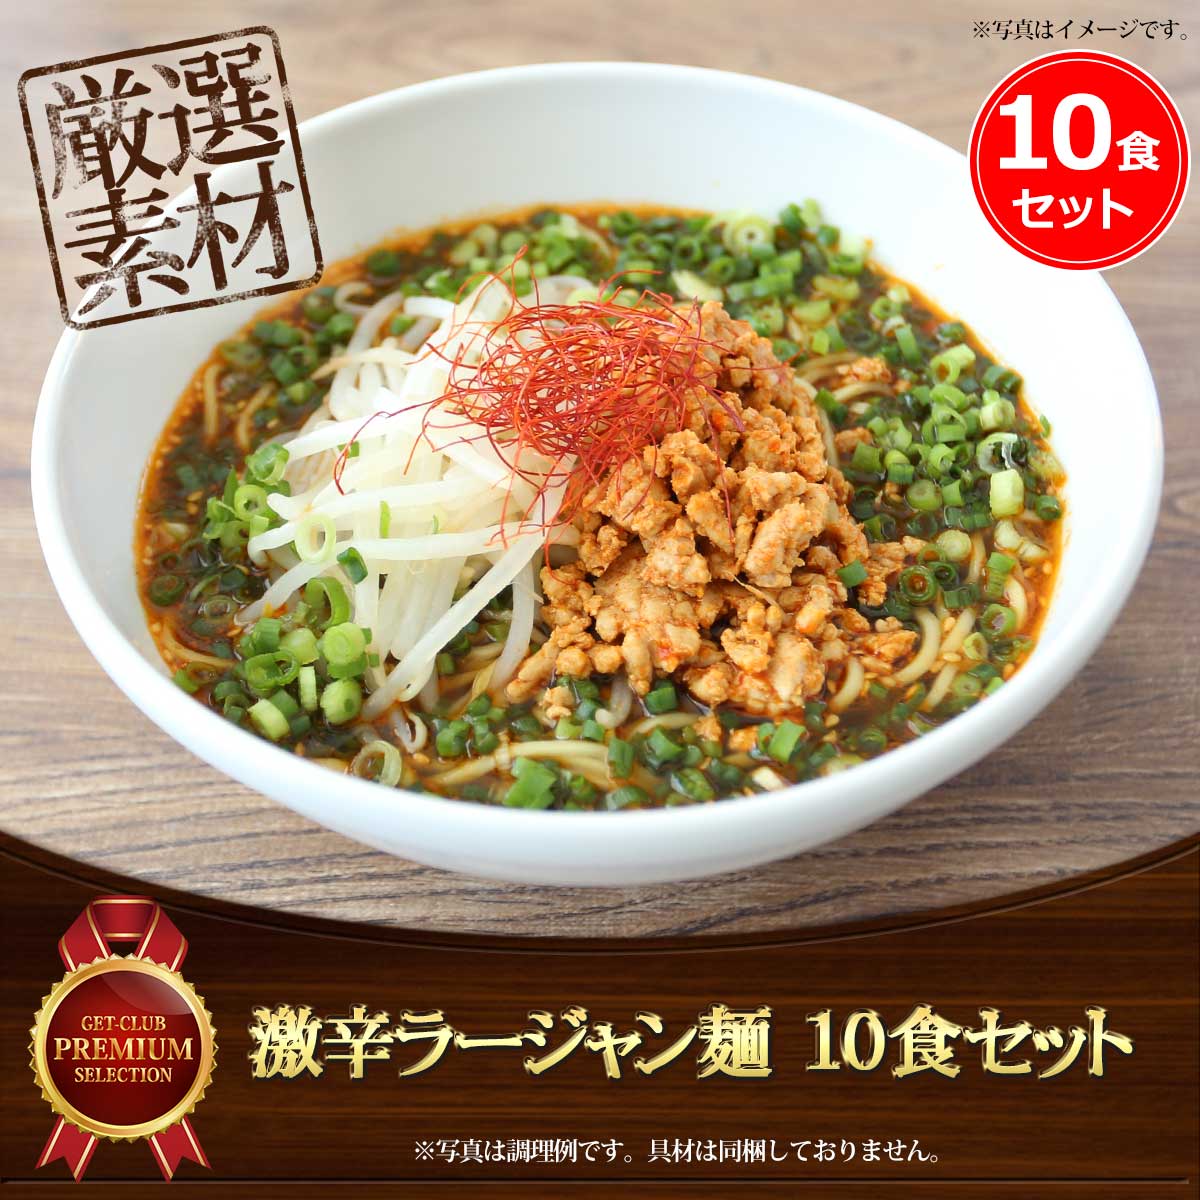 激辛ラージャン麺（10食セット）老舗製麺所の中太ストレート麺使用